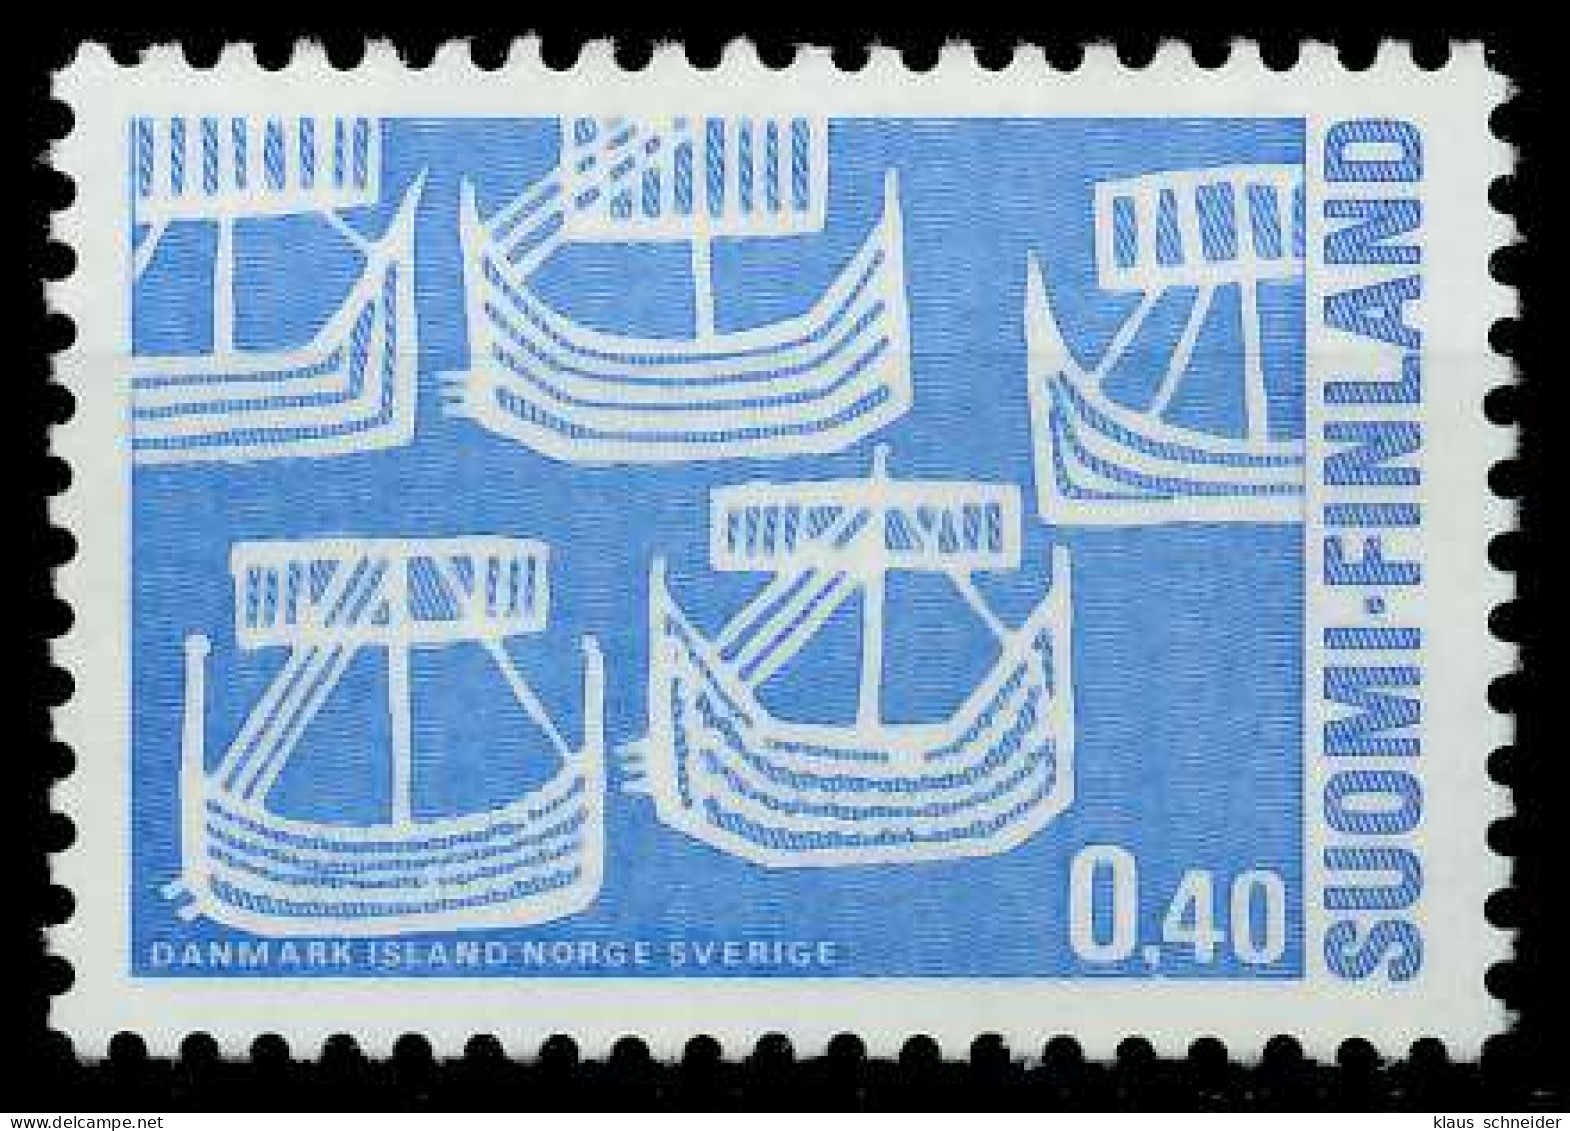 FINNLAND 1969 Nr 654 Postfrisch SB041FA - Ongebruikt